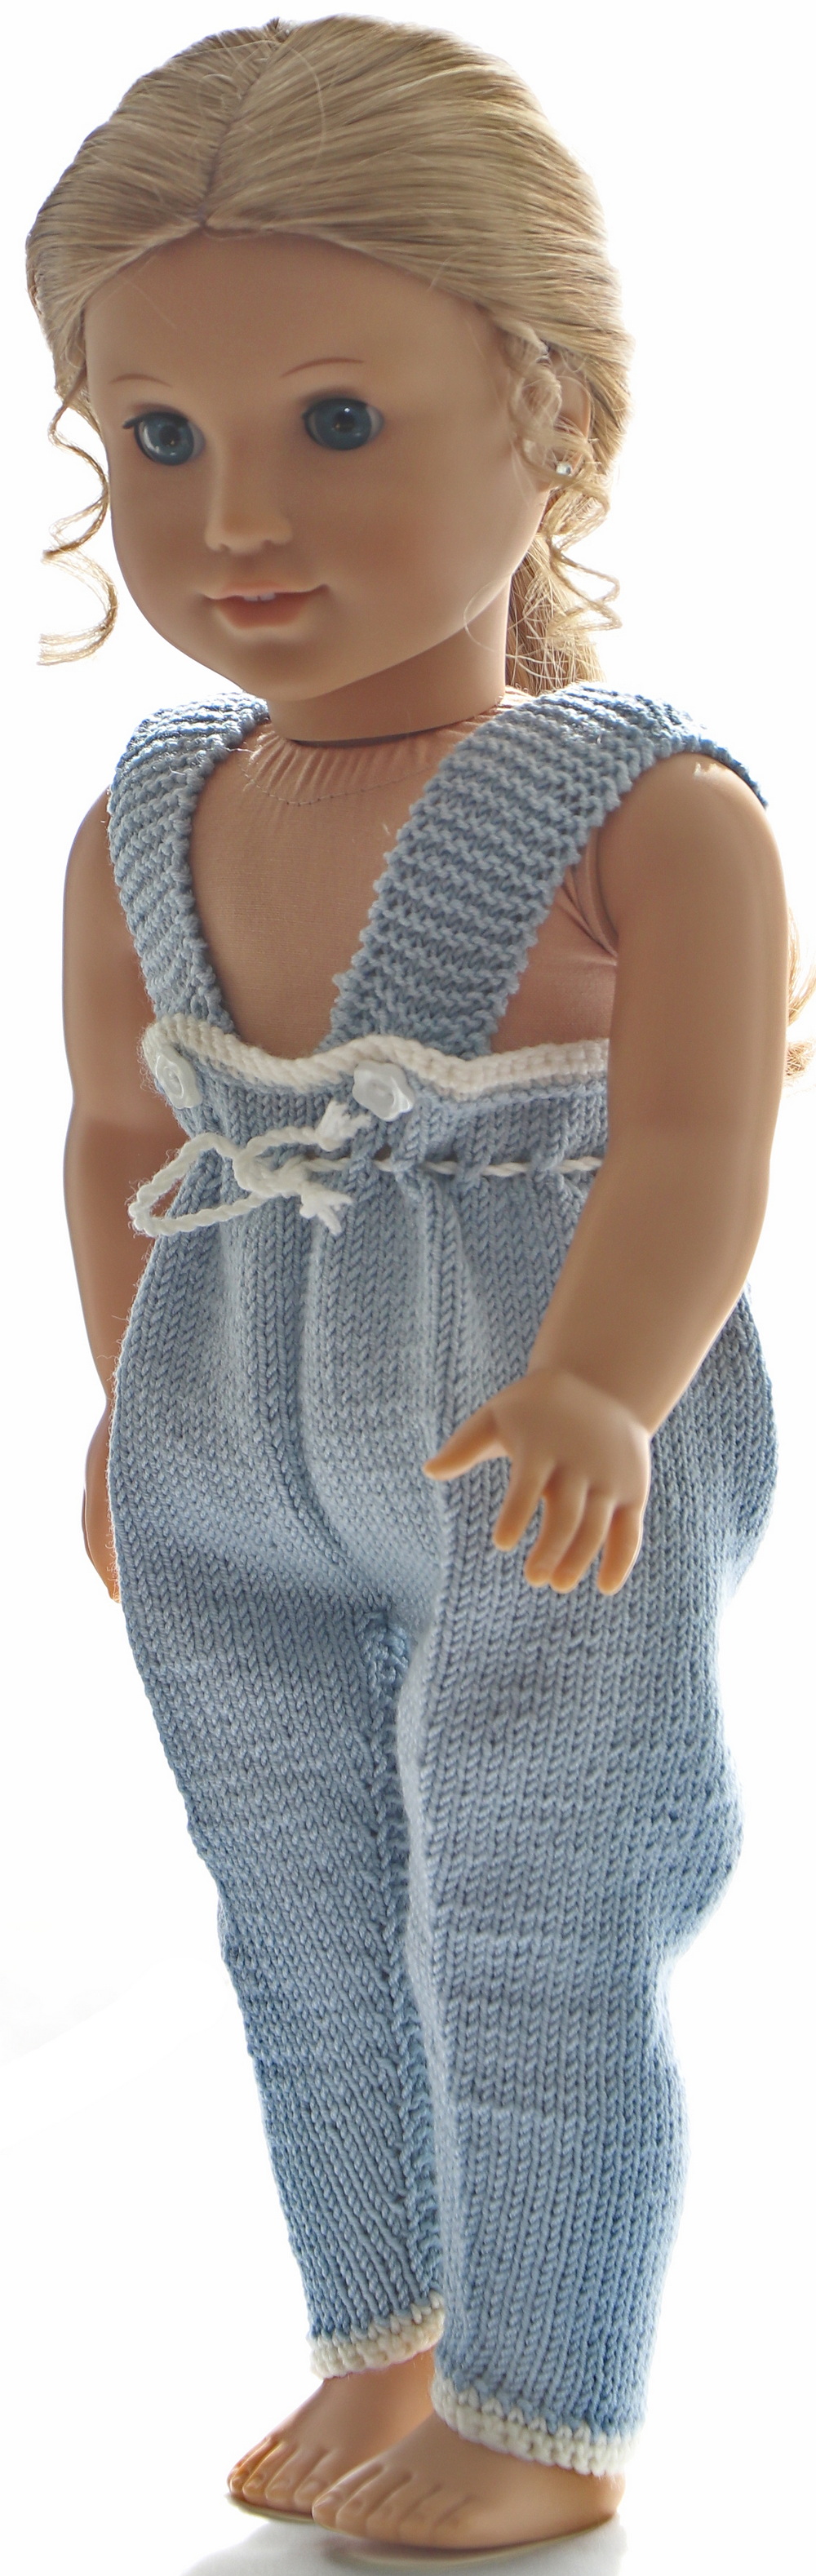 0232d-01-knitting-patterns-for-american-girl-dolls.jpg